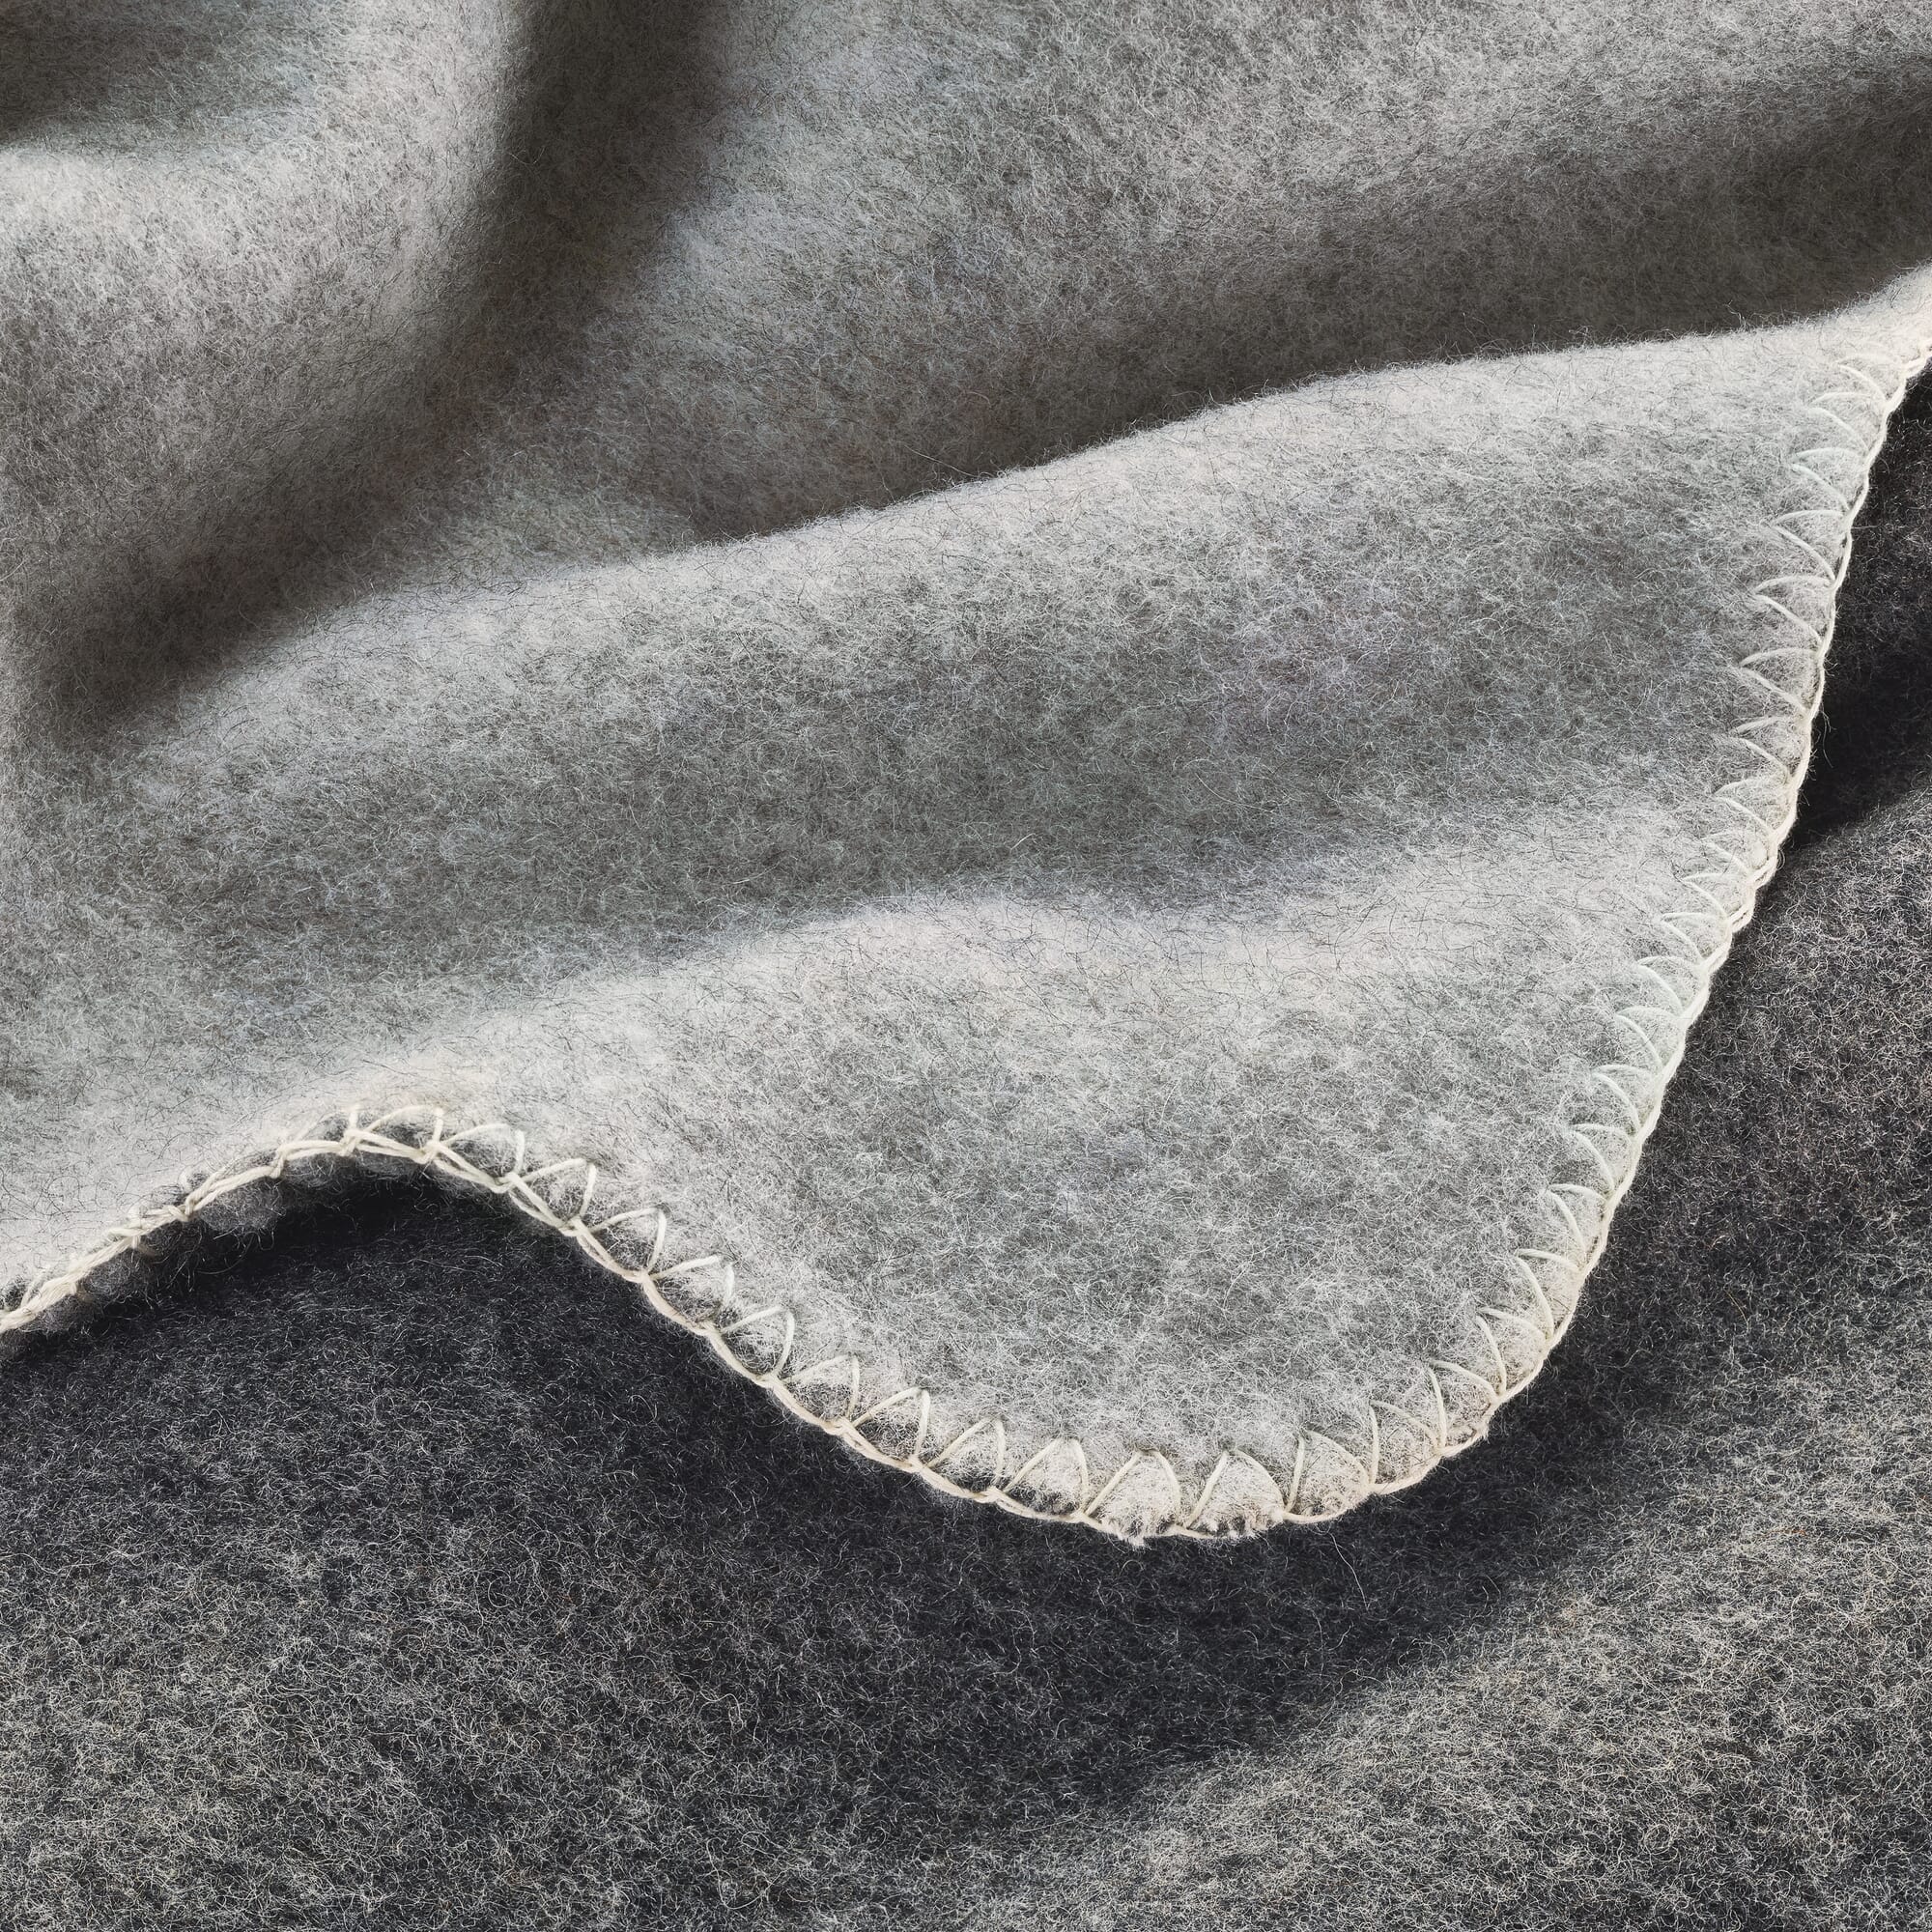 Couverture laine woolmark double face gris anthracite 240x260 cm